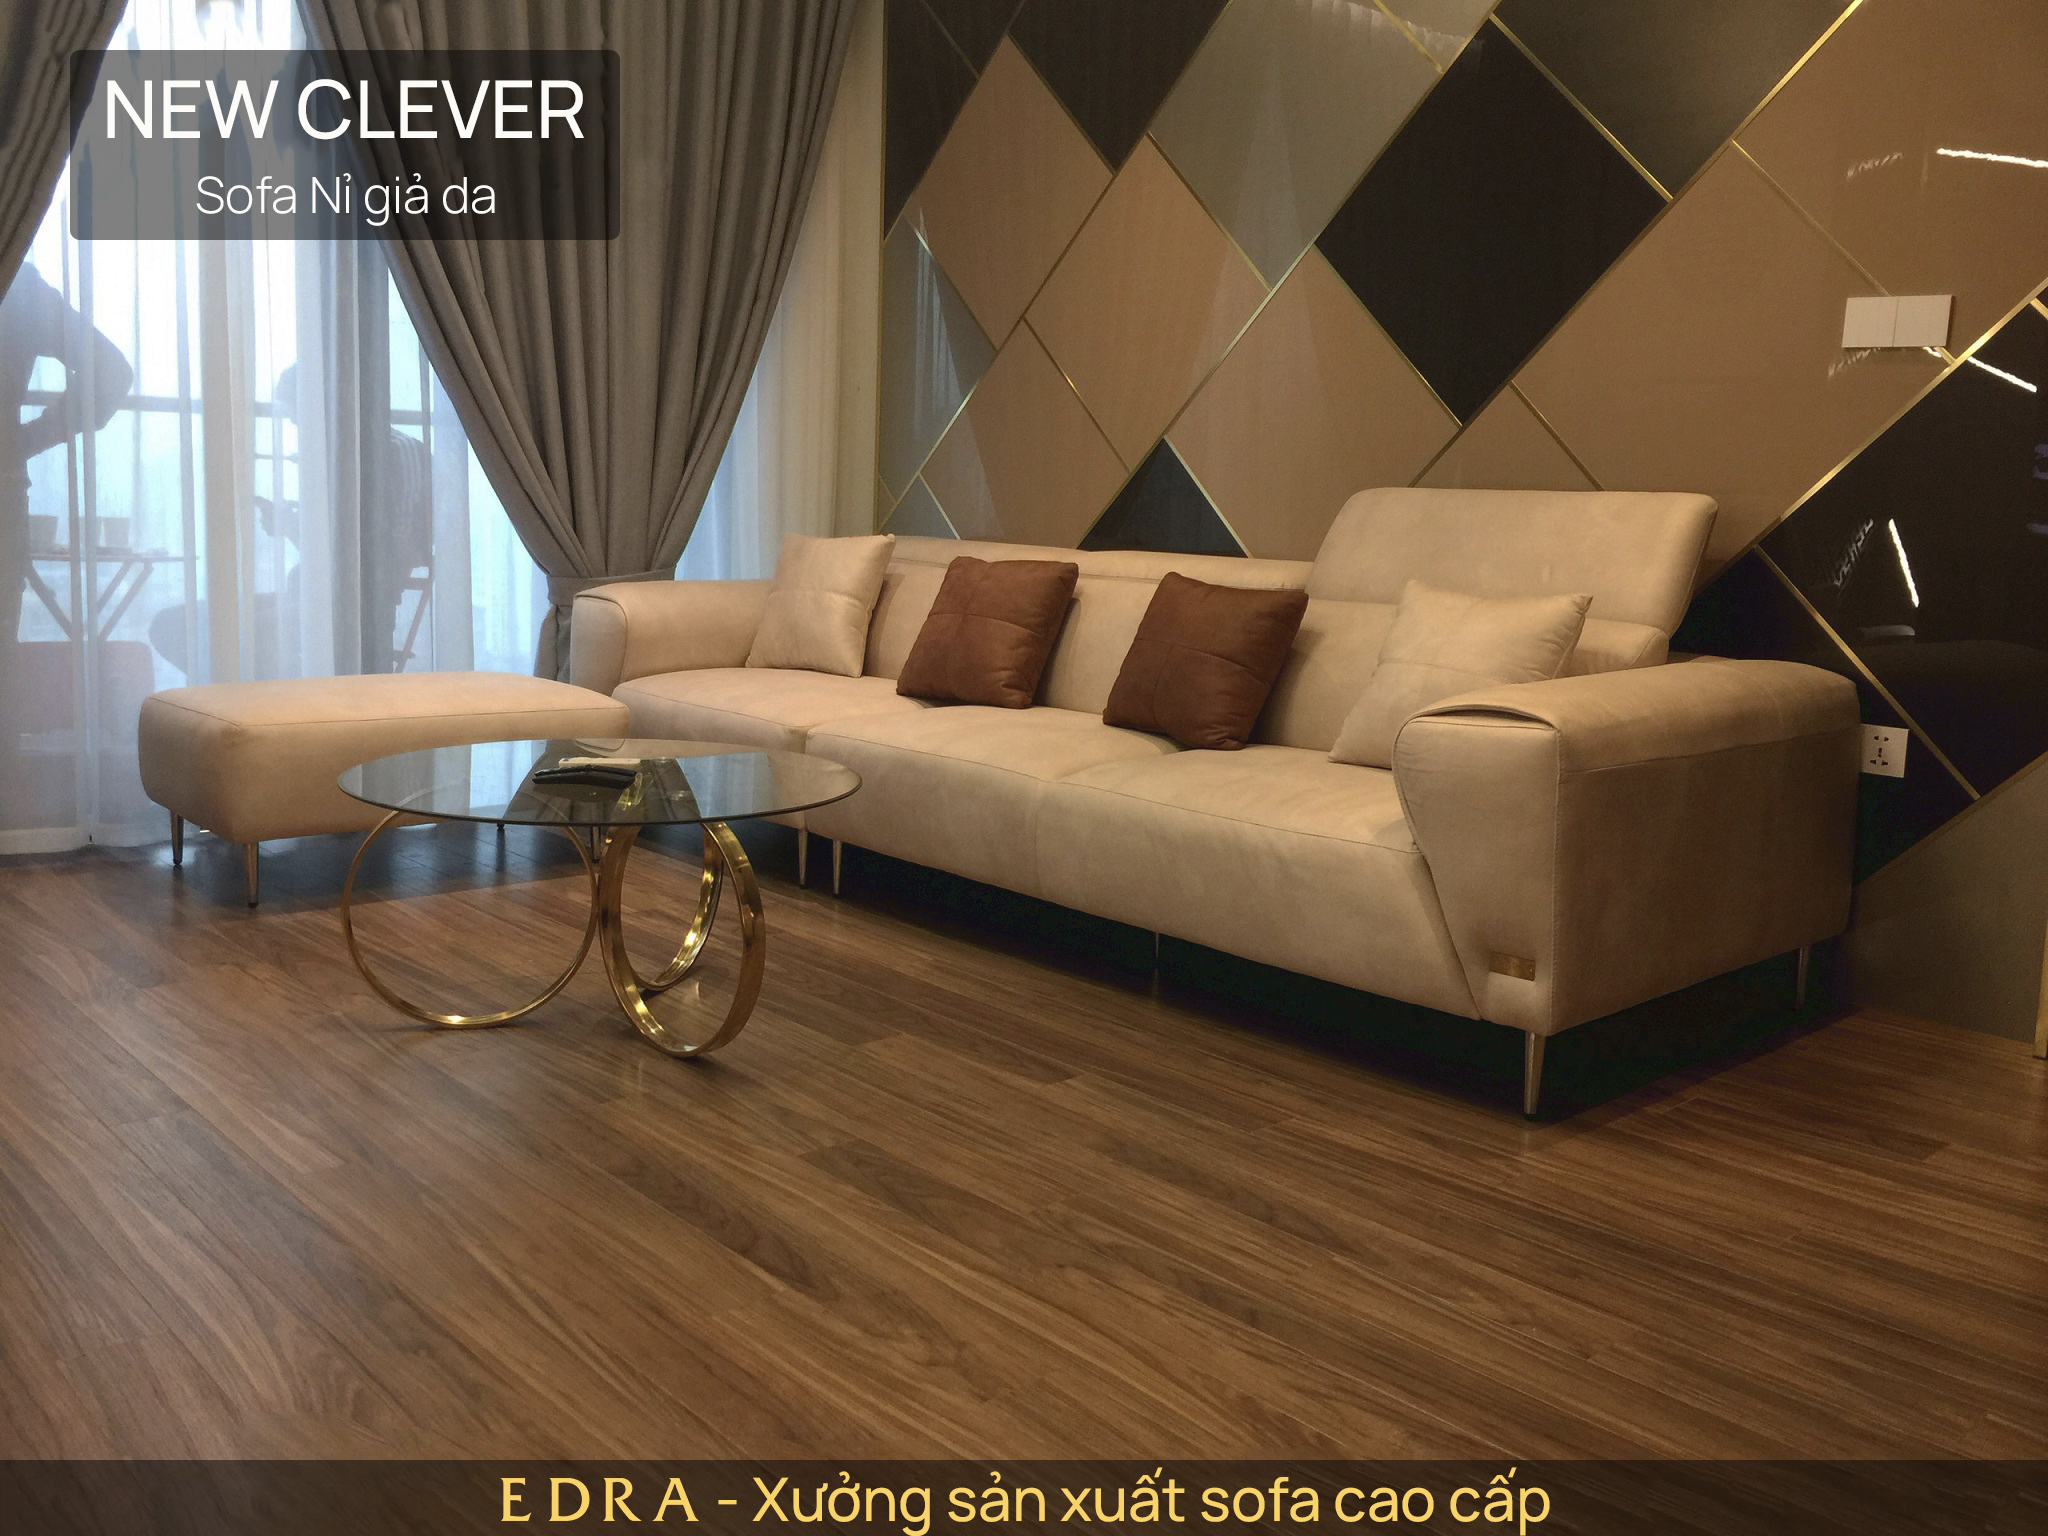 Bàn giao bộ sofa văng hiện đại New Clever cho anh Nam - The Zei